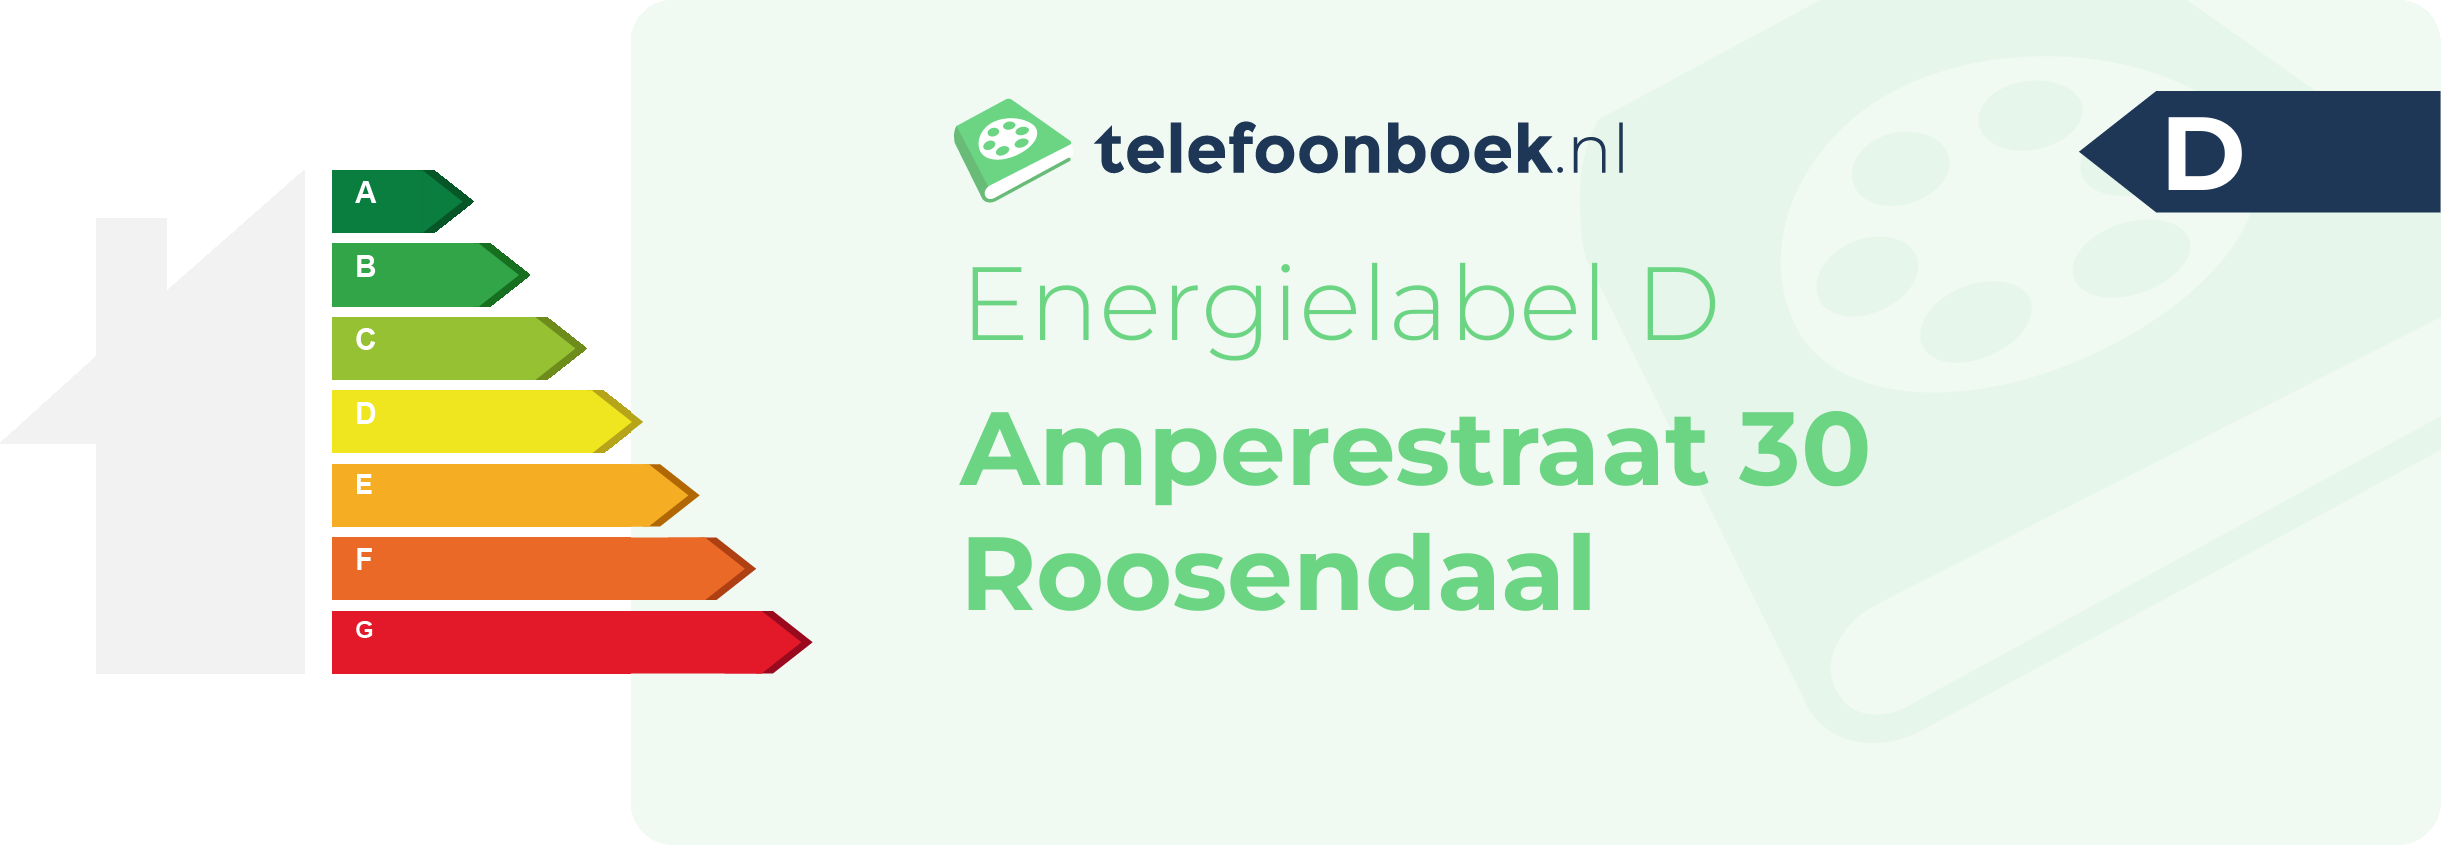 Energielabel Amperestraat 30 Roosendaal